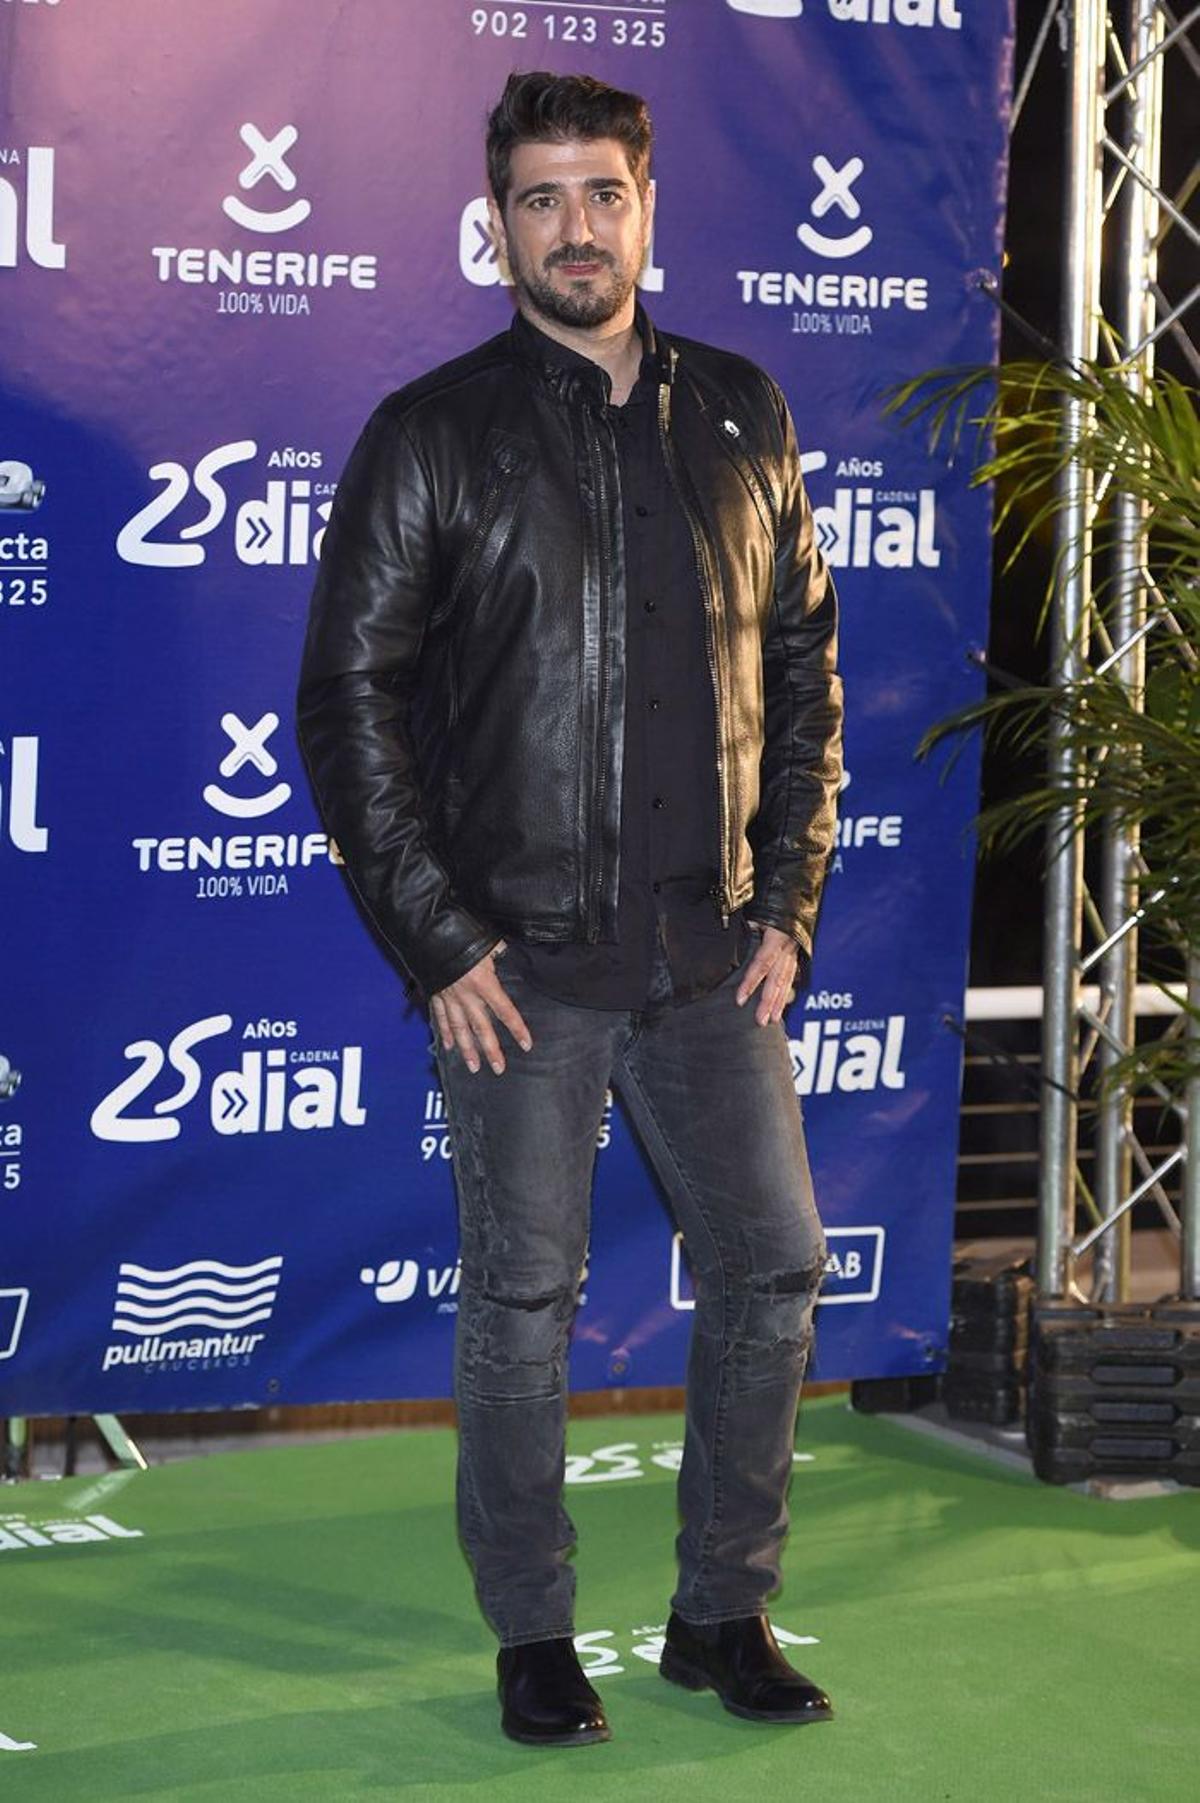 Premios Cadena Dial 2015, Antonio Orozco